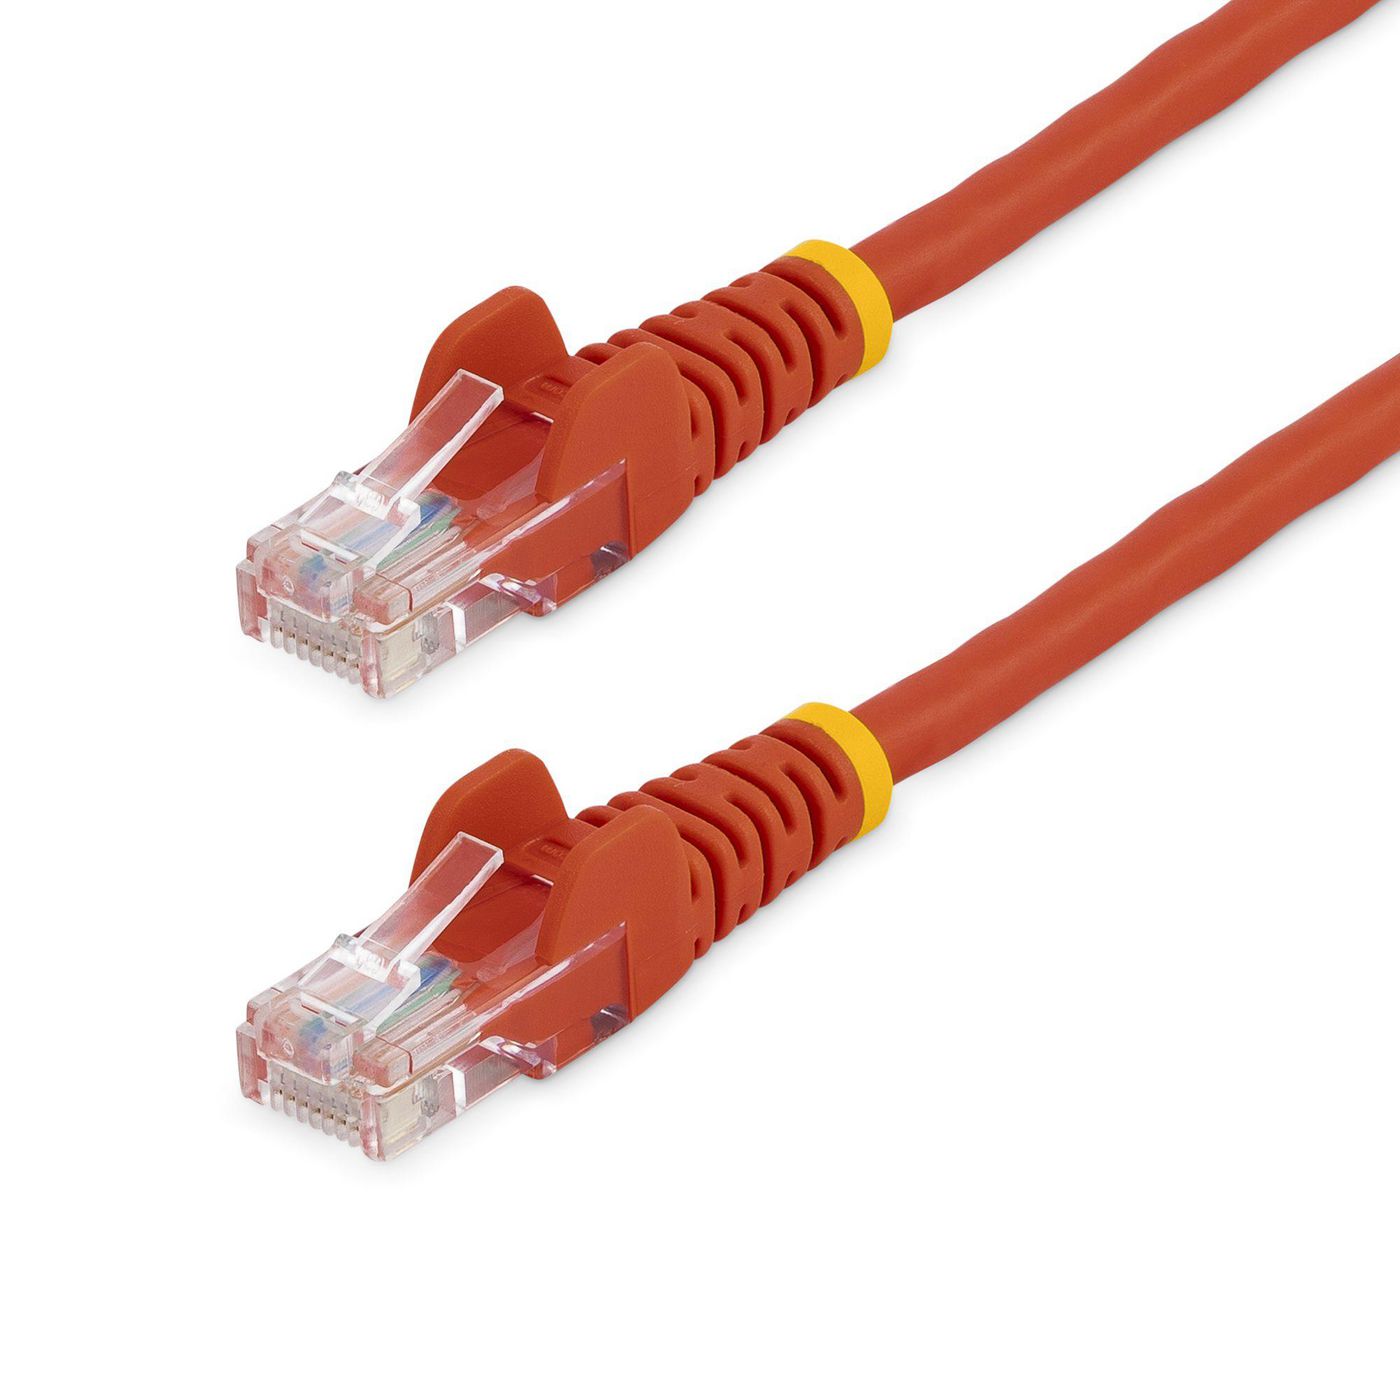 STARTECH.COM 0,5m Cat5e Ethernet Netzwerkkabel Snagless mit RJ45 - Cat 5e UTP Kabel - Rot